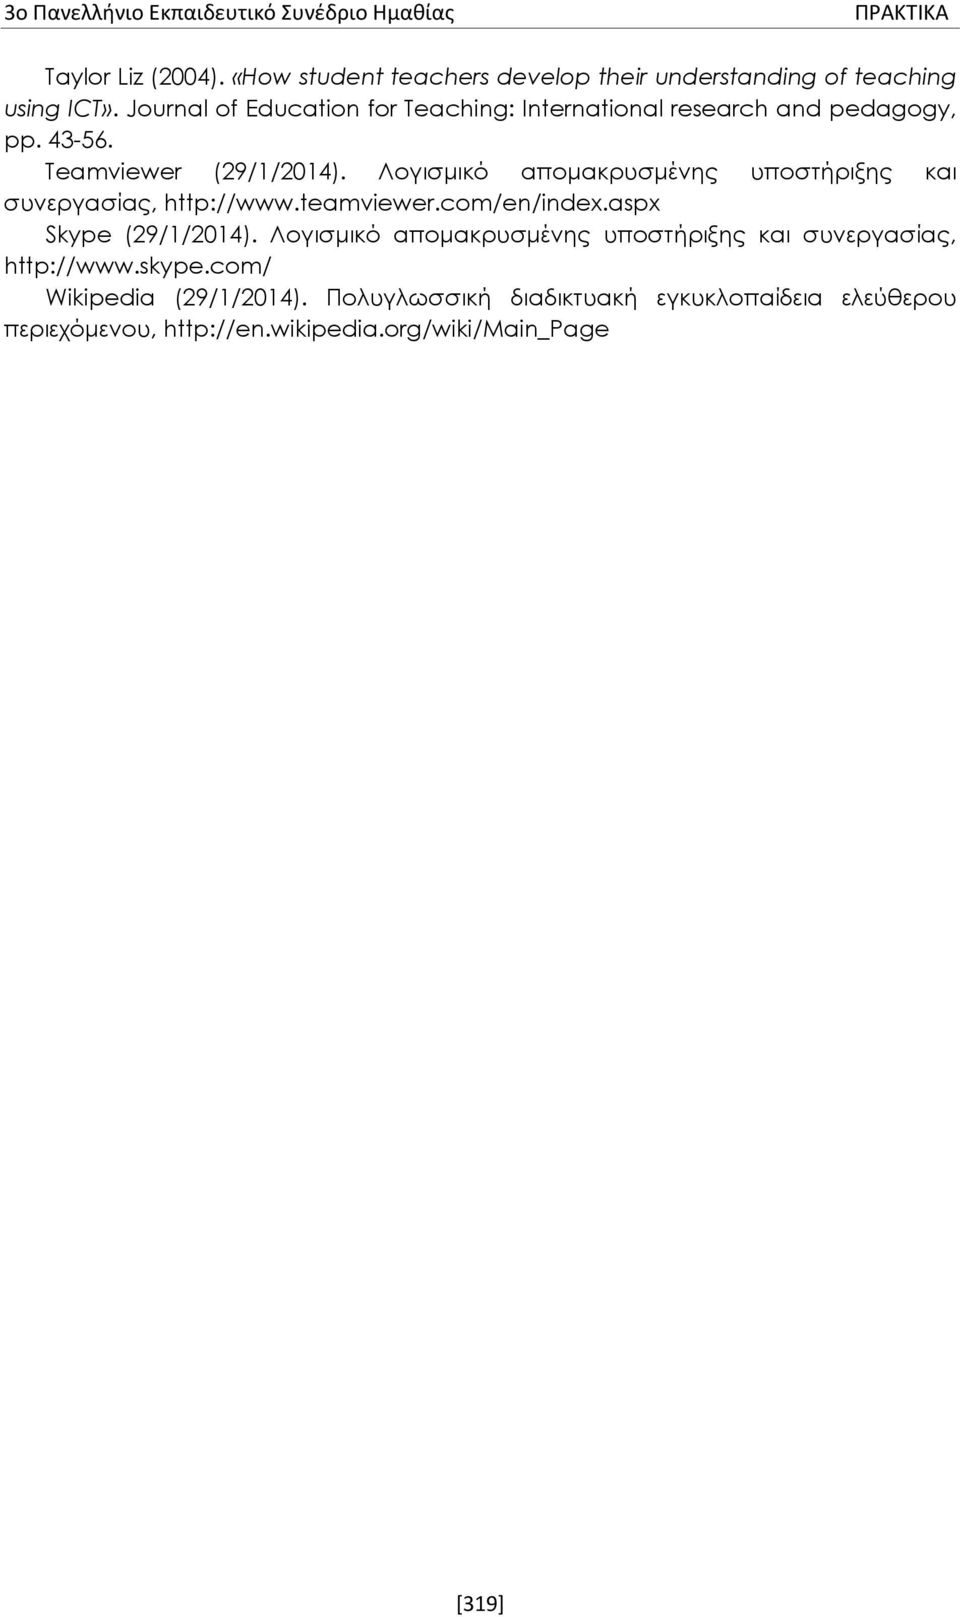 Λογισμικό απομακρυσμένης υποστήριξης και συνεργασίας, http://www.teamviewer.com/en/index.aspx Skype (29/1/2014).